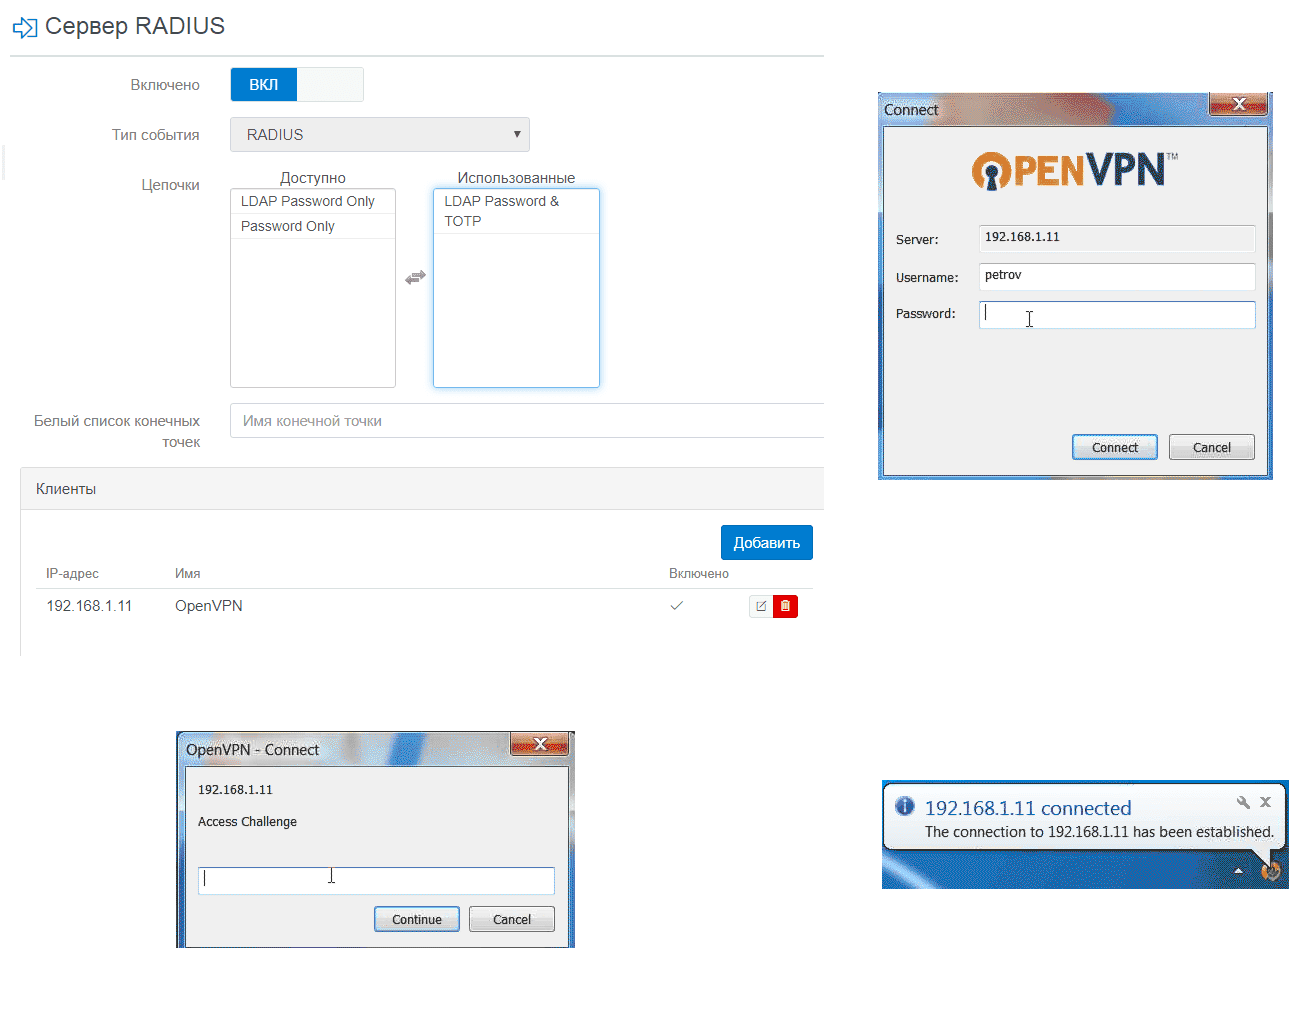 Пример применения NetIQ Advanced Authentication для защиты VPN-доступа